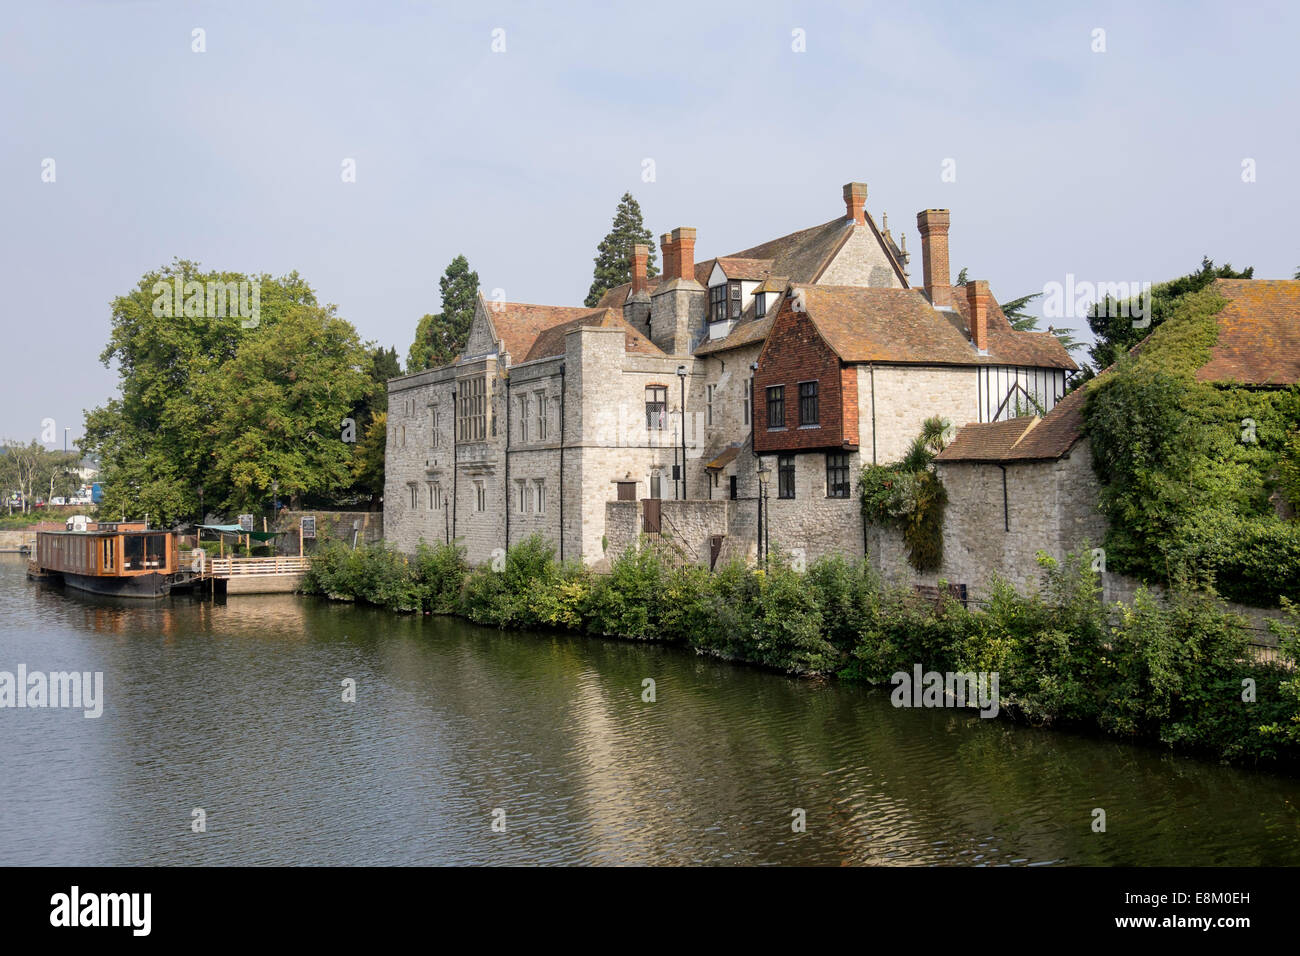 Le 14ème et le 16ème siècle de l'archevêque, Palais au bord de la rivière Medway en comtés du sud ville de Maidstone Kent Angleterre Royaume-uni Grande-Bretagne Banque D'Images